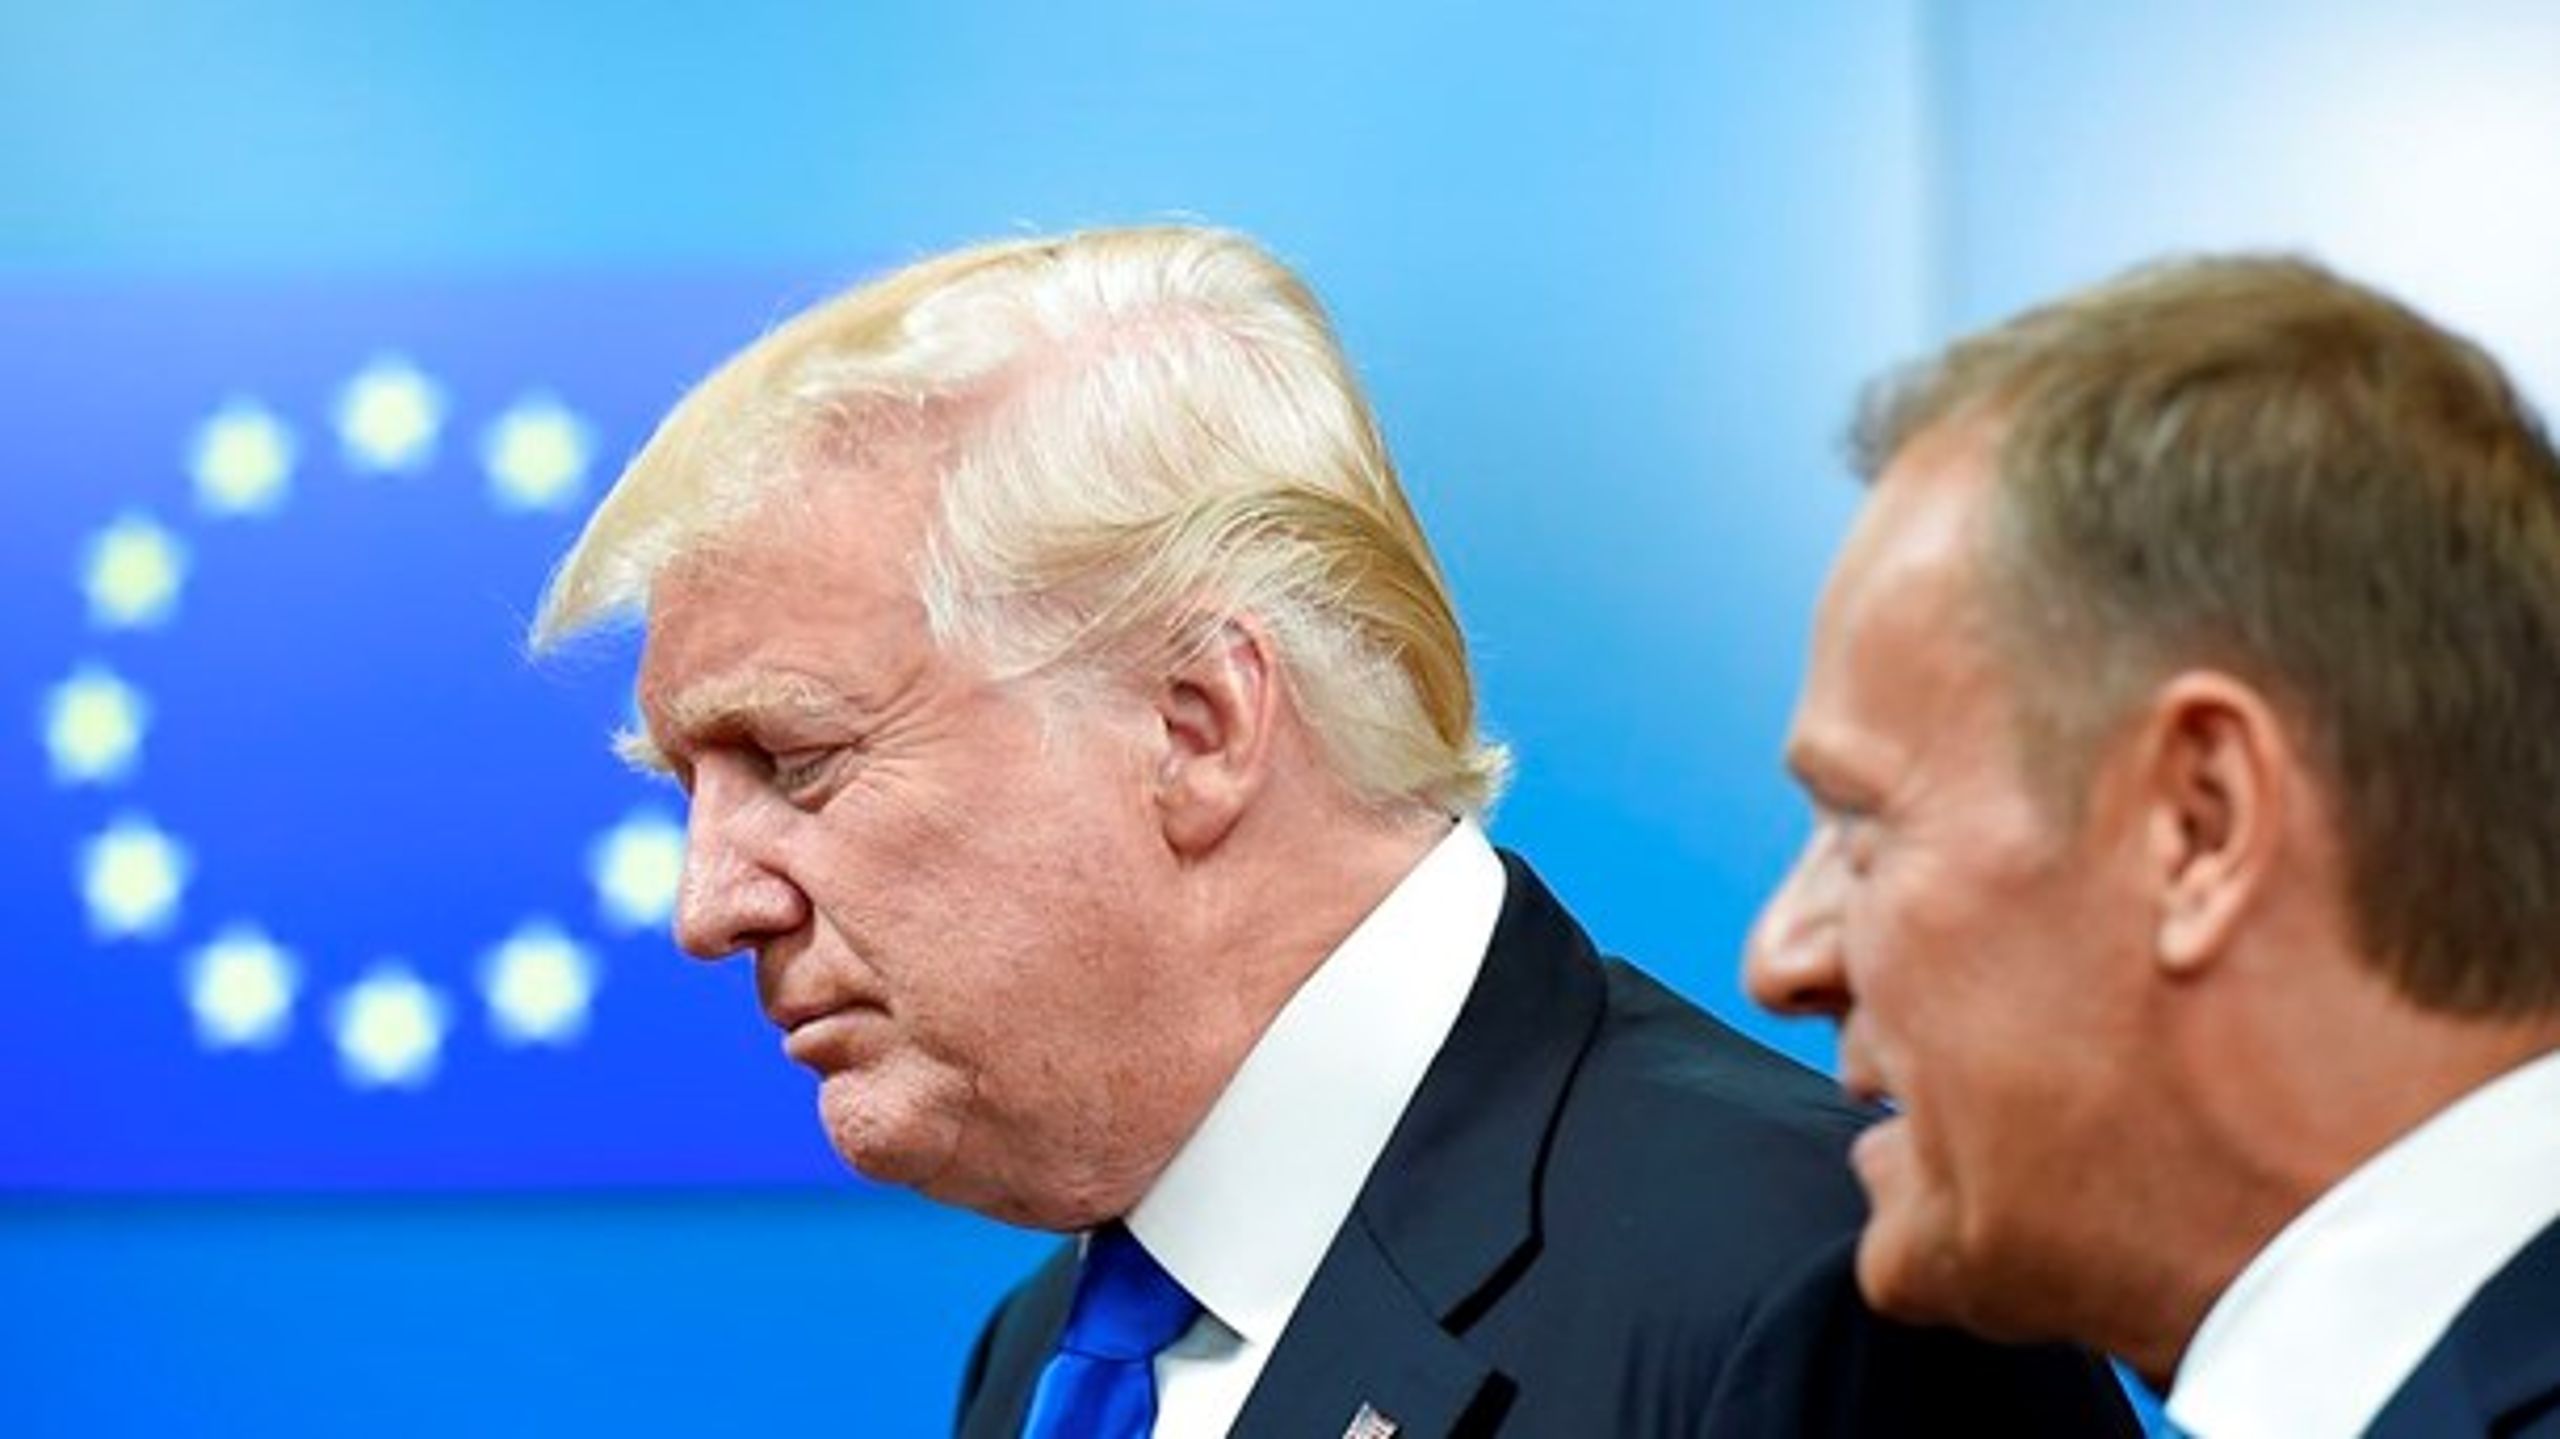 Den amerikanske præsident, Donald Trump, mødtes torsdag med blandt andre formanden for Det Europæiske Råd, Donald Tusk. Mødet gik ikke specielt godt.